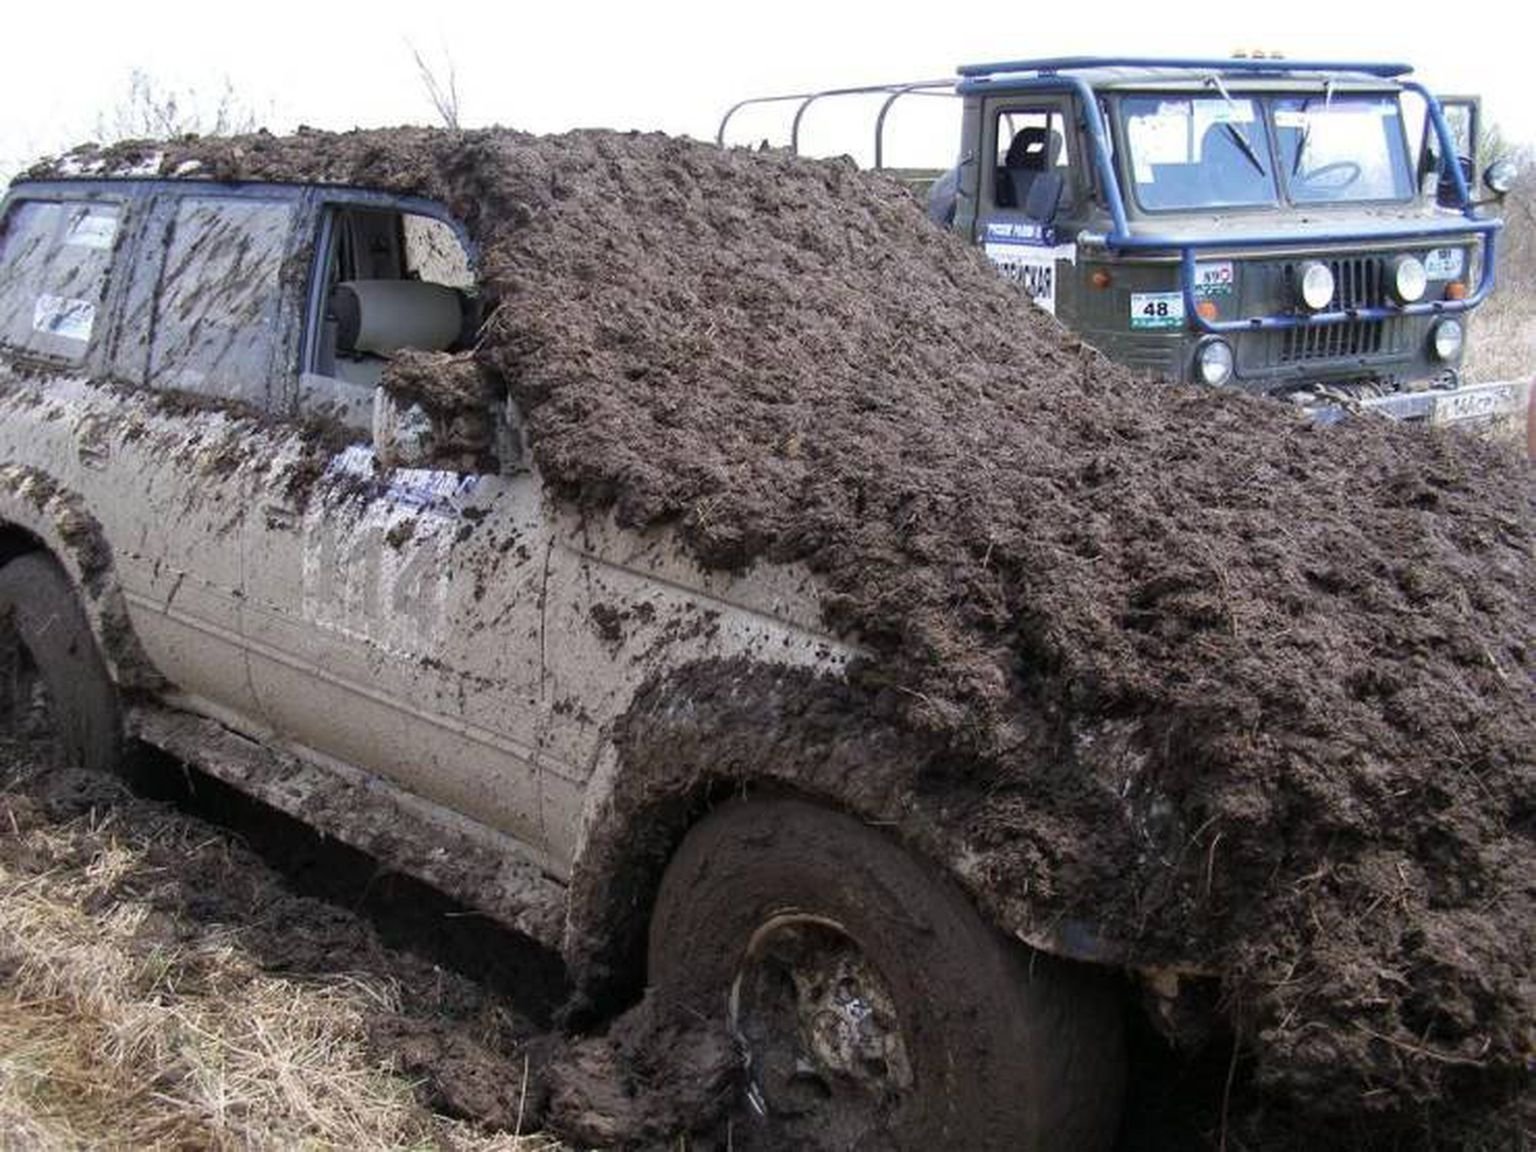 После покатушек. Машина в грязи. Грязная машина. Джипы в грязи. Очень грязный внедорожник.